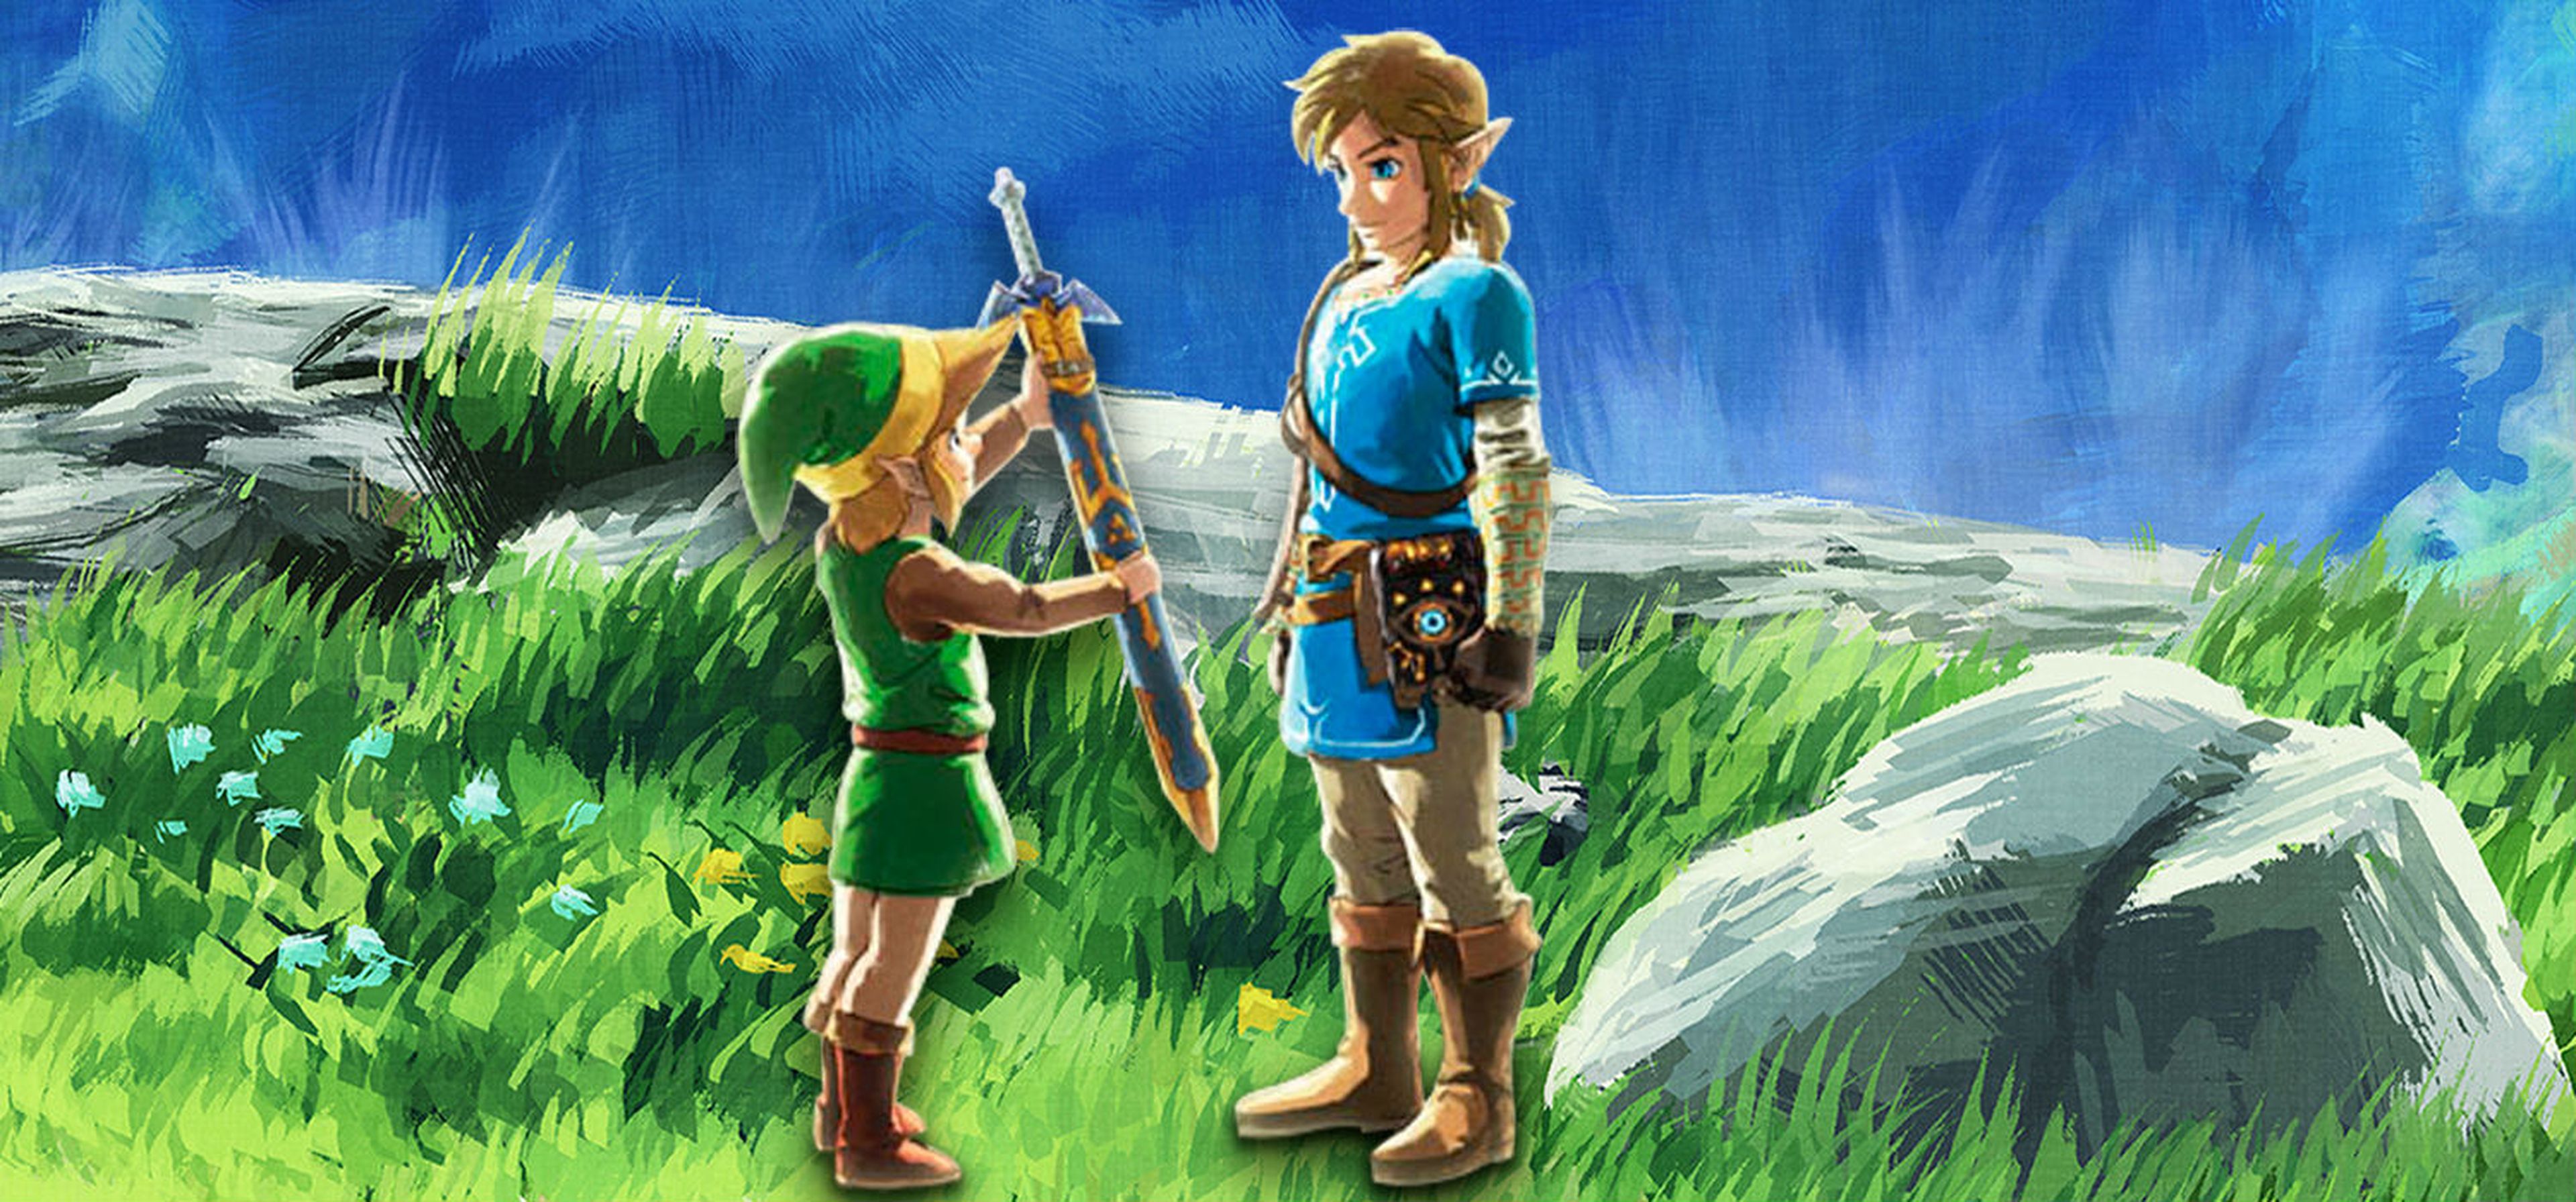 Análisis de The Legend of Zelda: Breath of the Wild